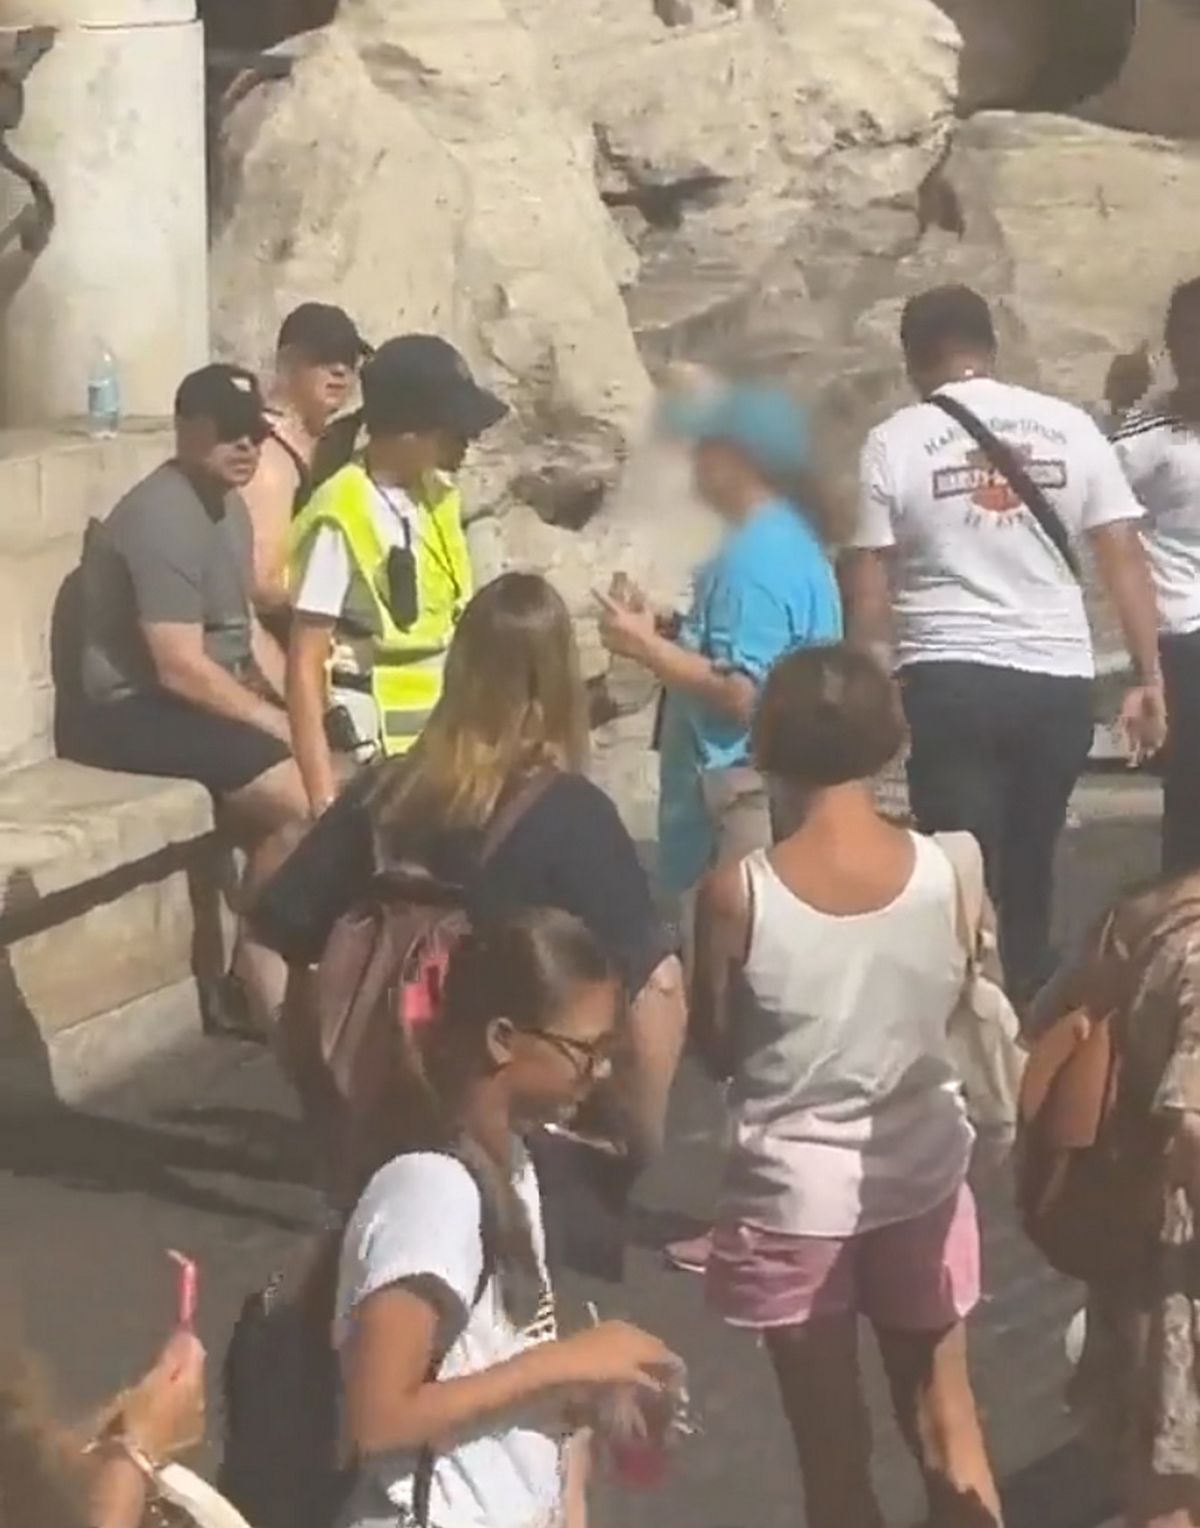 La touriste s'est éloignée de la fontaine avant d'être confrontée à une officière, qui lui a vraisemblablement adressé une sévère réprimande.